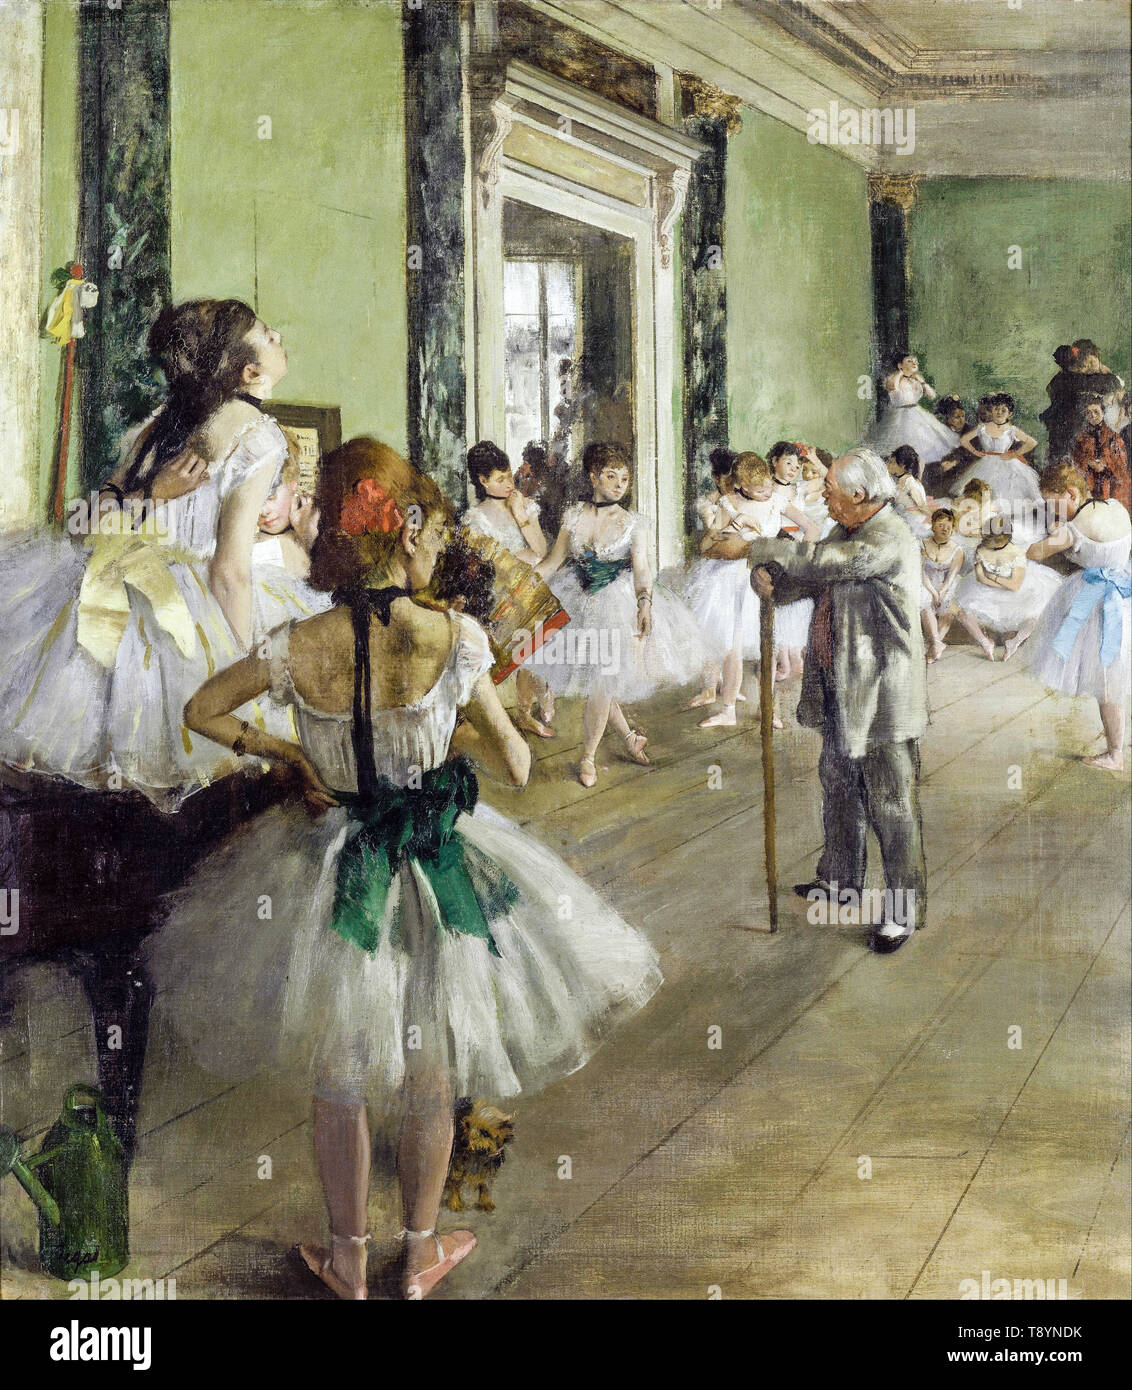 Edgar Degas, The Ballet Class, painting, circa 1871 Stock Photo